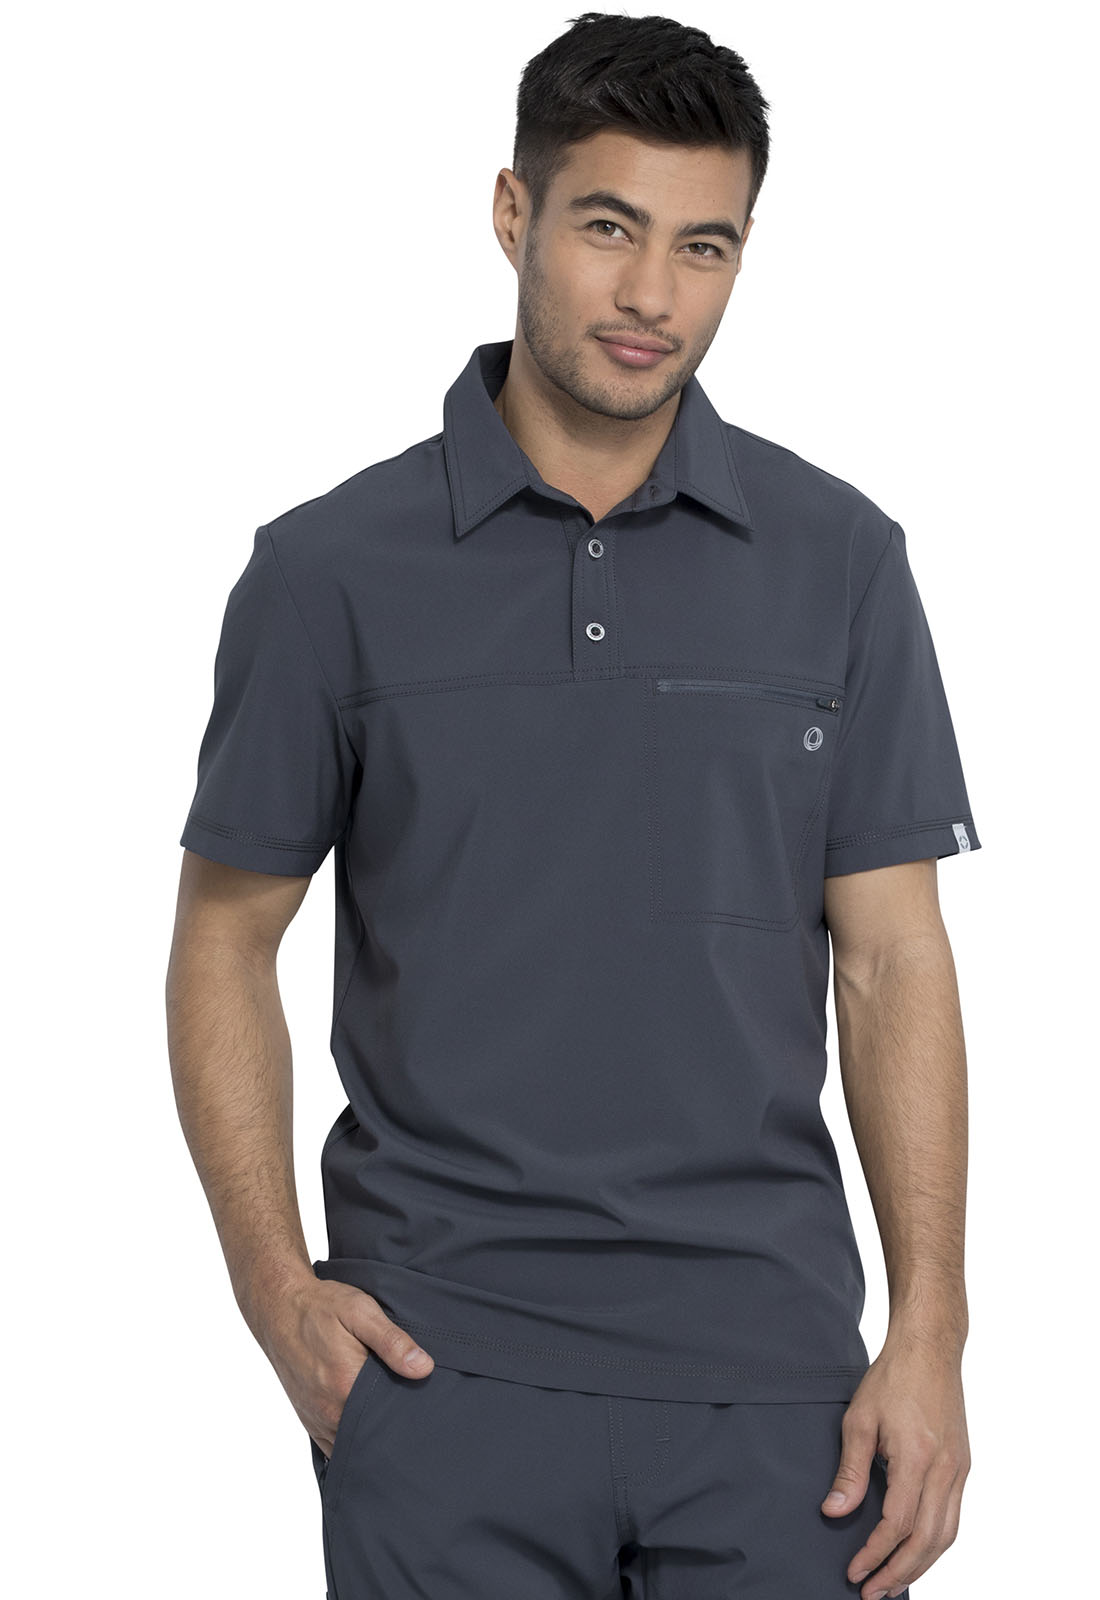 Cherokee - Cherokee Infinity Scrubs Top for Men Polo Shirt CK825A, XS ...